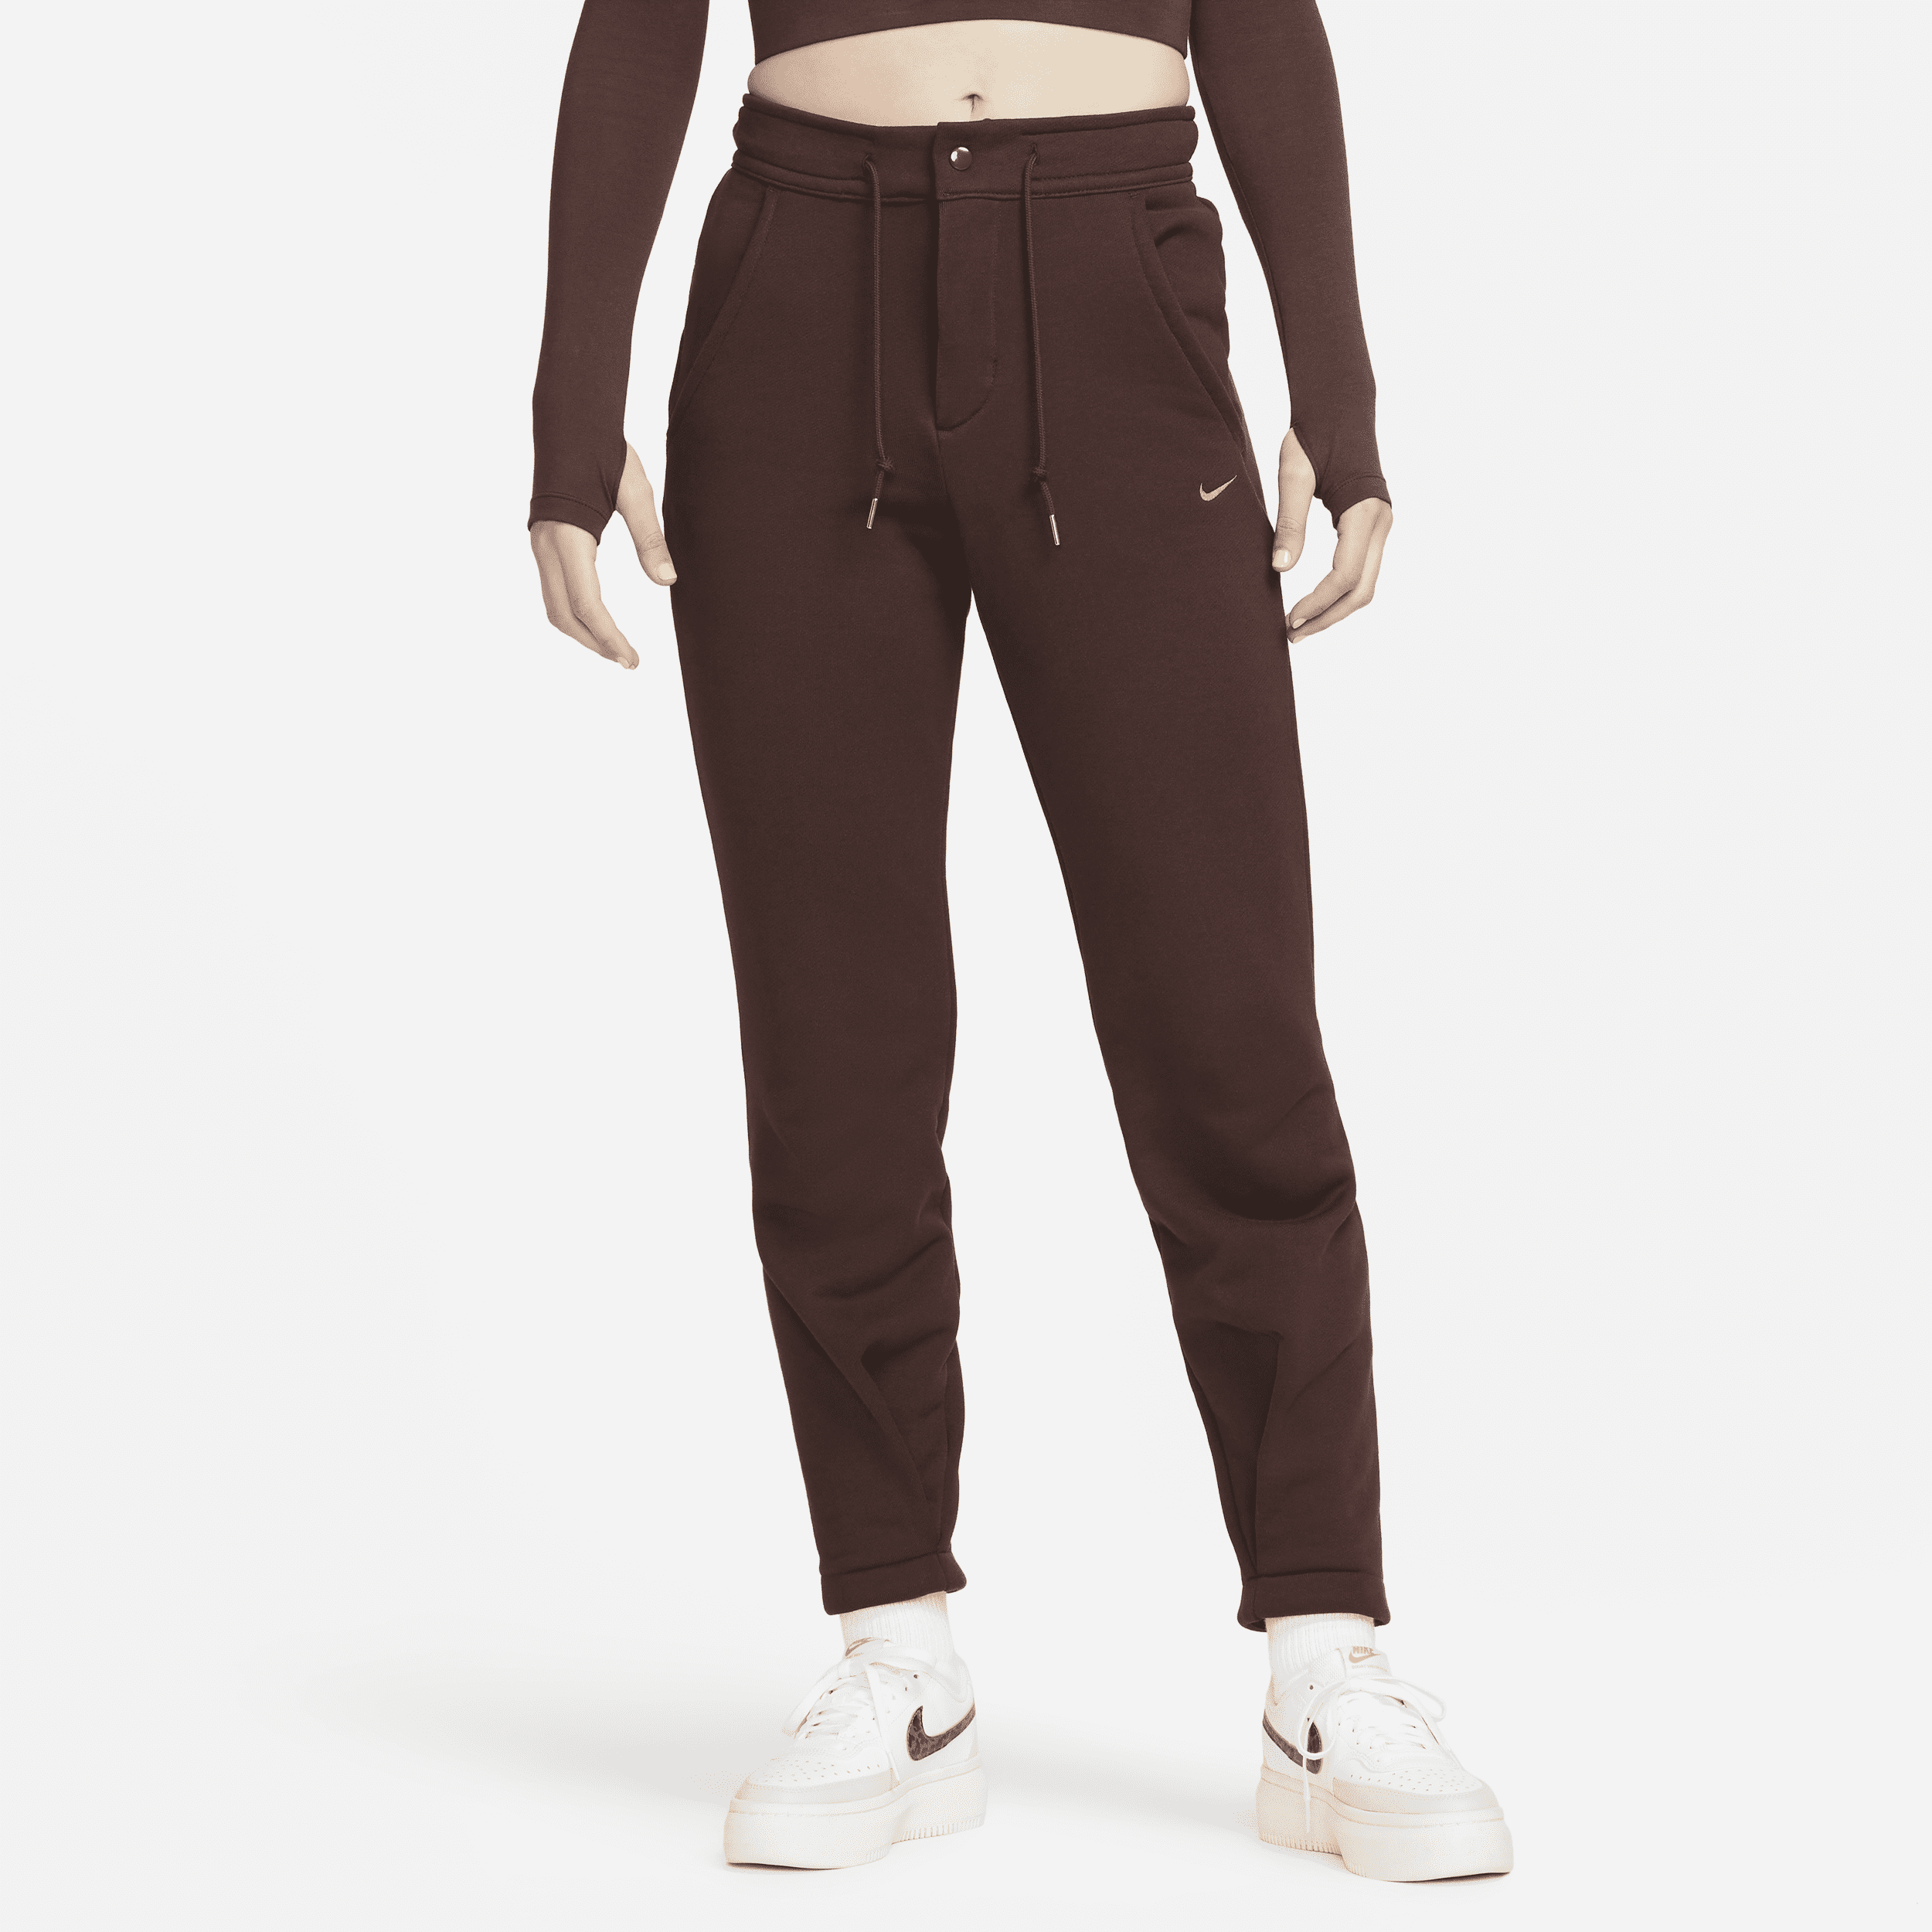 Nike Sportswear Modern Fleece Pantalón de talle alto y tejido French terry - Mujer - Marrón